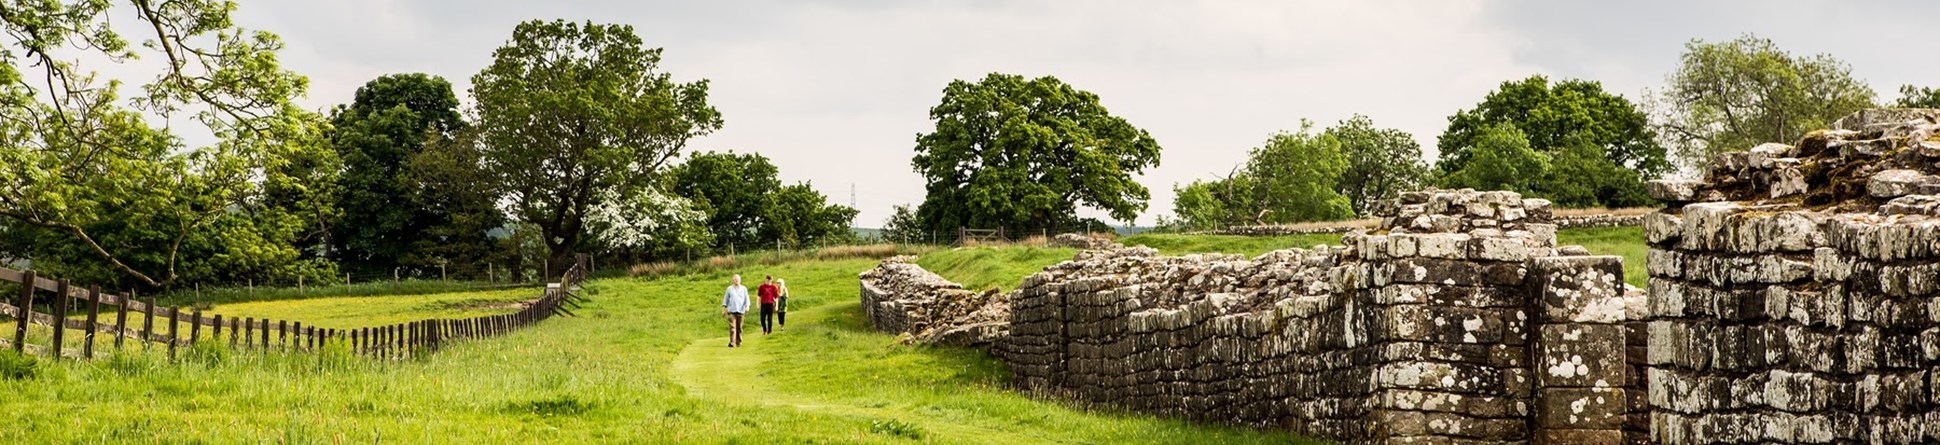 People walking on grass alongside a long stone wall